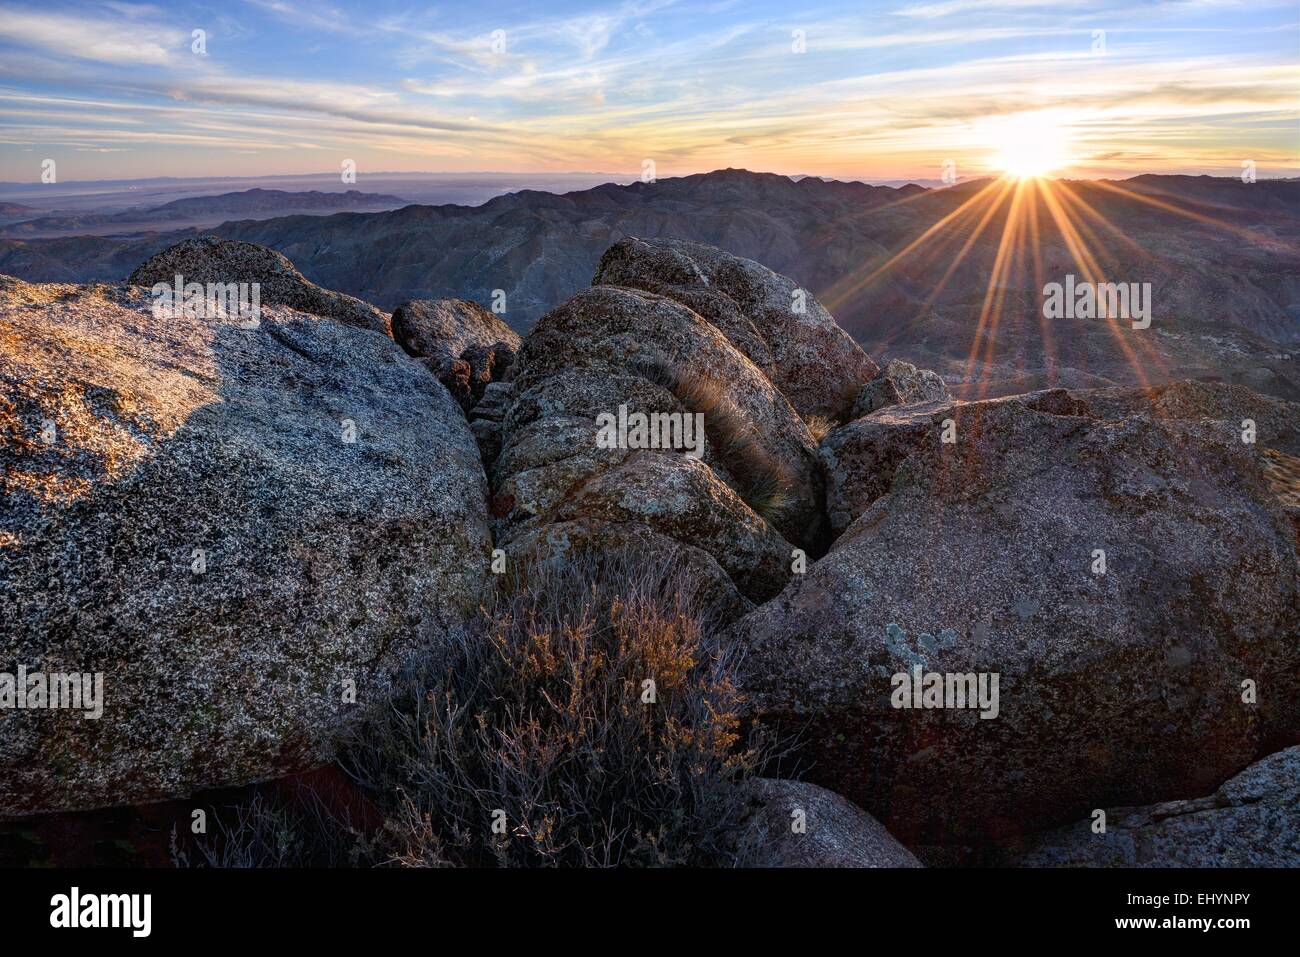 Sunrise over the Jacumba Mountains, California, USA Stock Photo